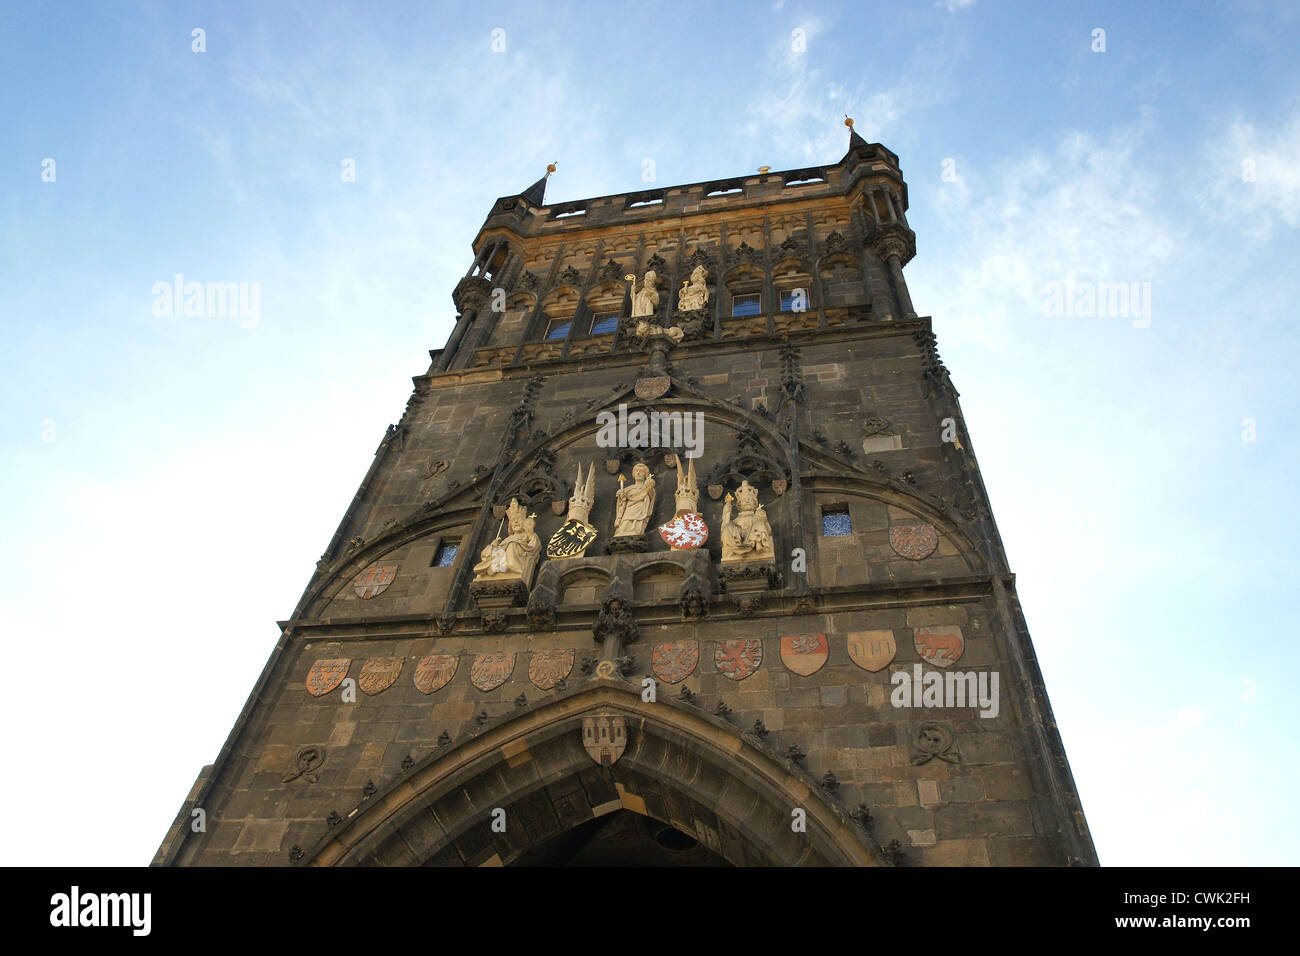 République tchèque. Prague. Tour du pont de la vieille ville. Édifice gothique conçu par Petr parler comme un ornement pour le Pont Charles. Banque D'Images